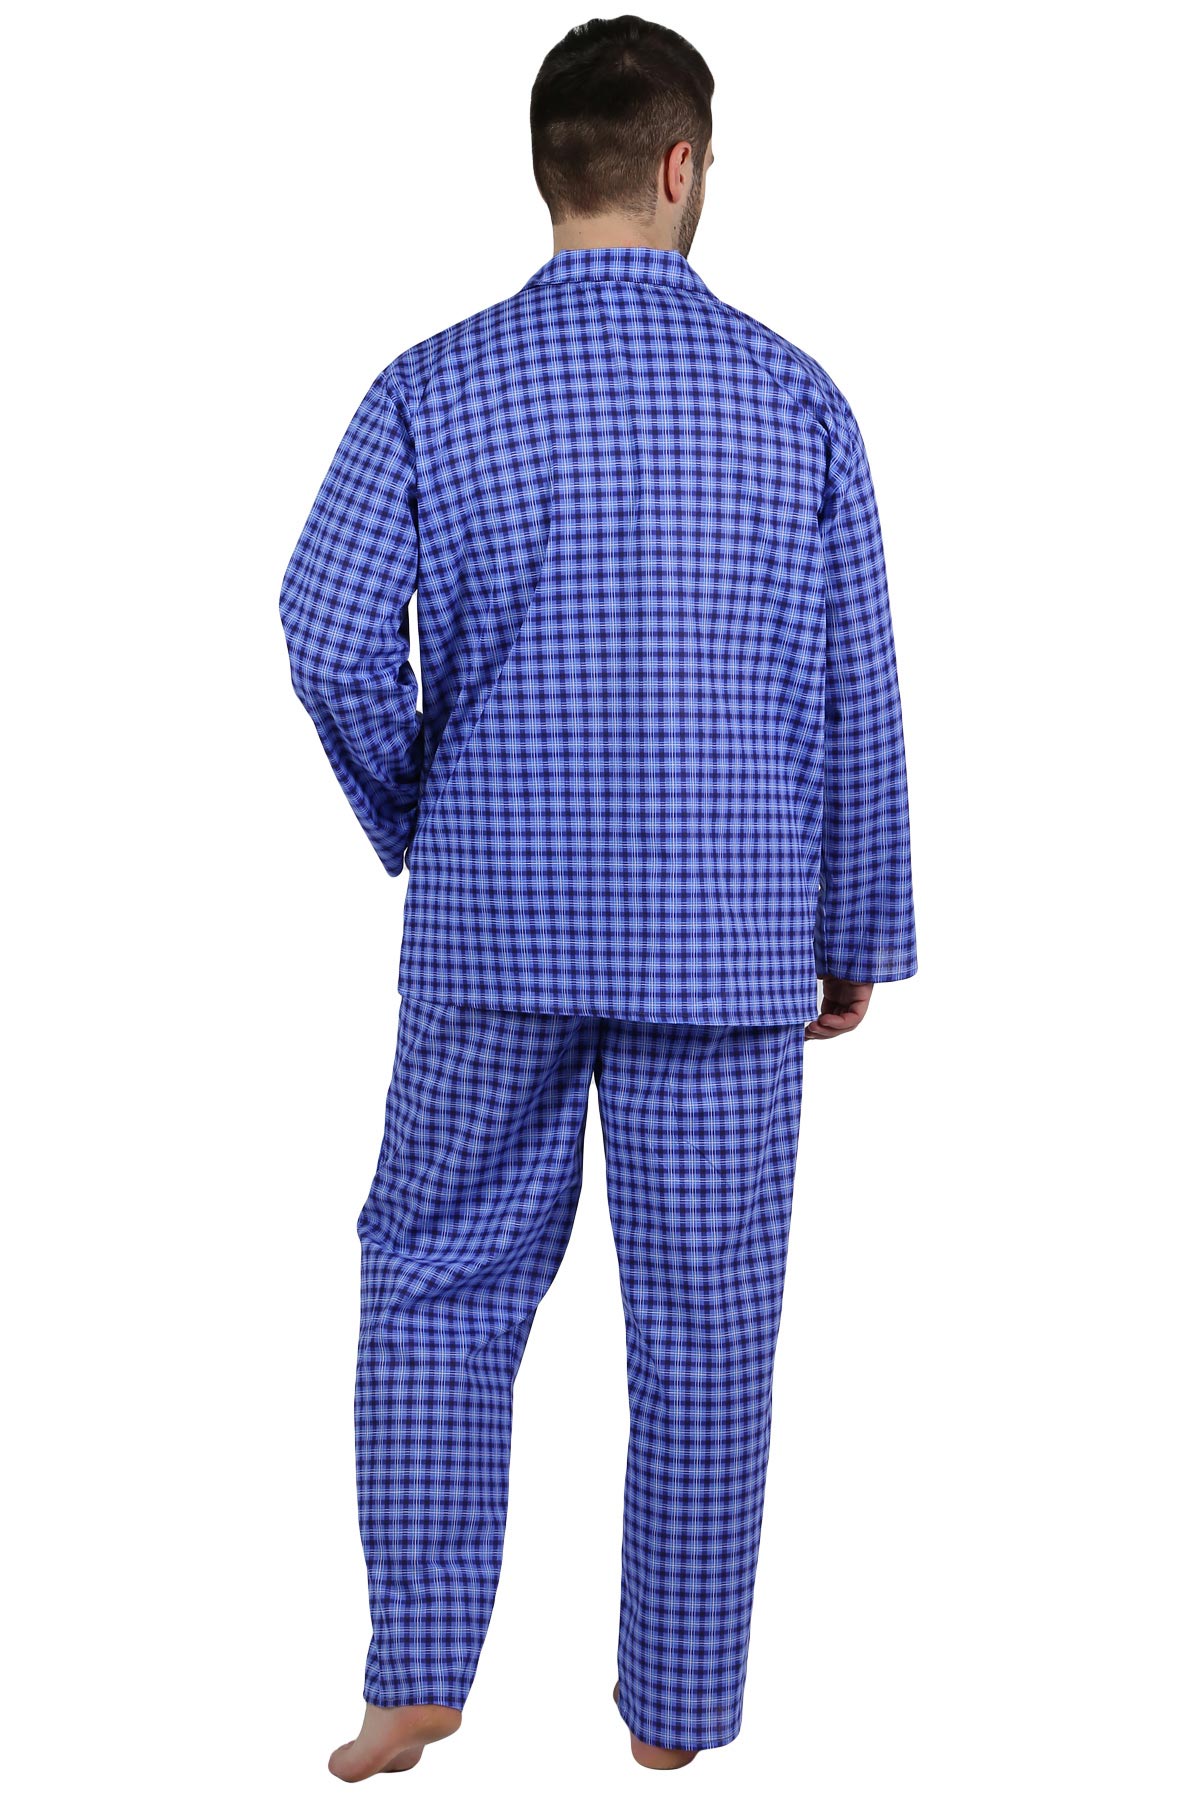 Муж. пижама арт. 22-0210 В ассортименте р. 50 Оптима трикотаж, размер 50 - фото 3